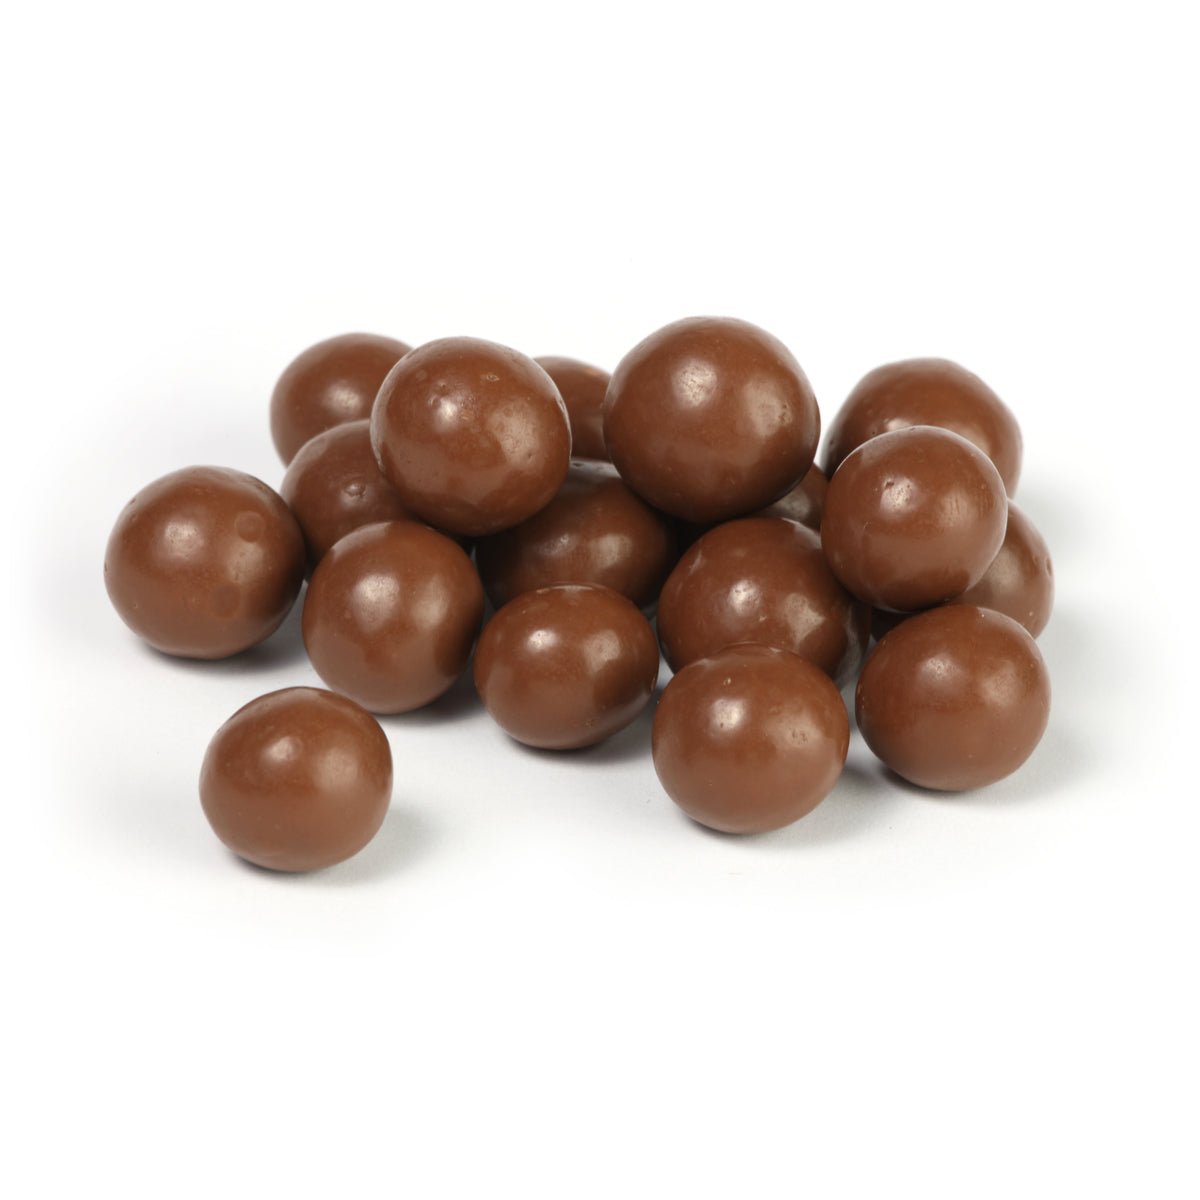 Шоколадные конфеты орех макадамия